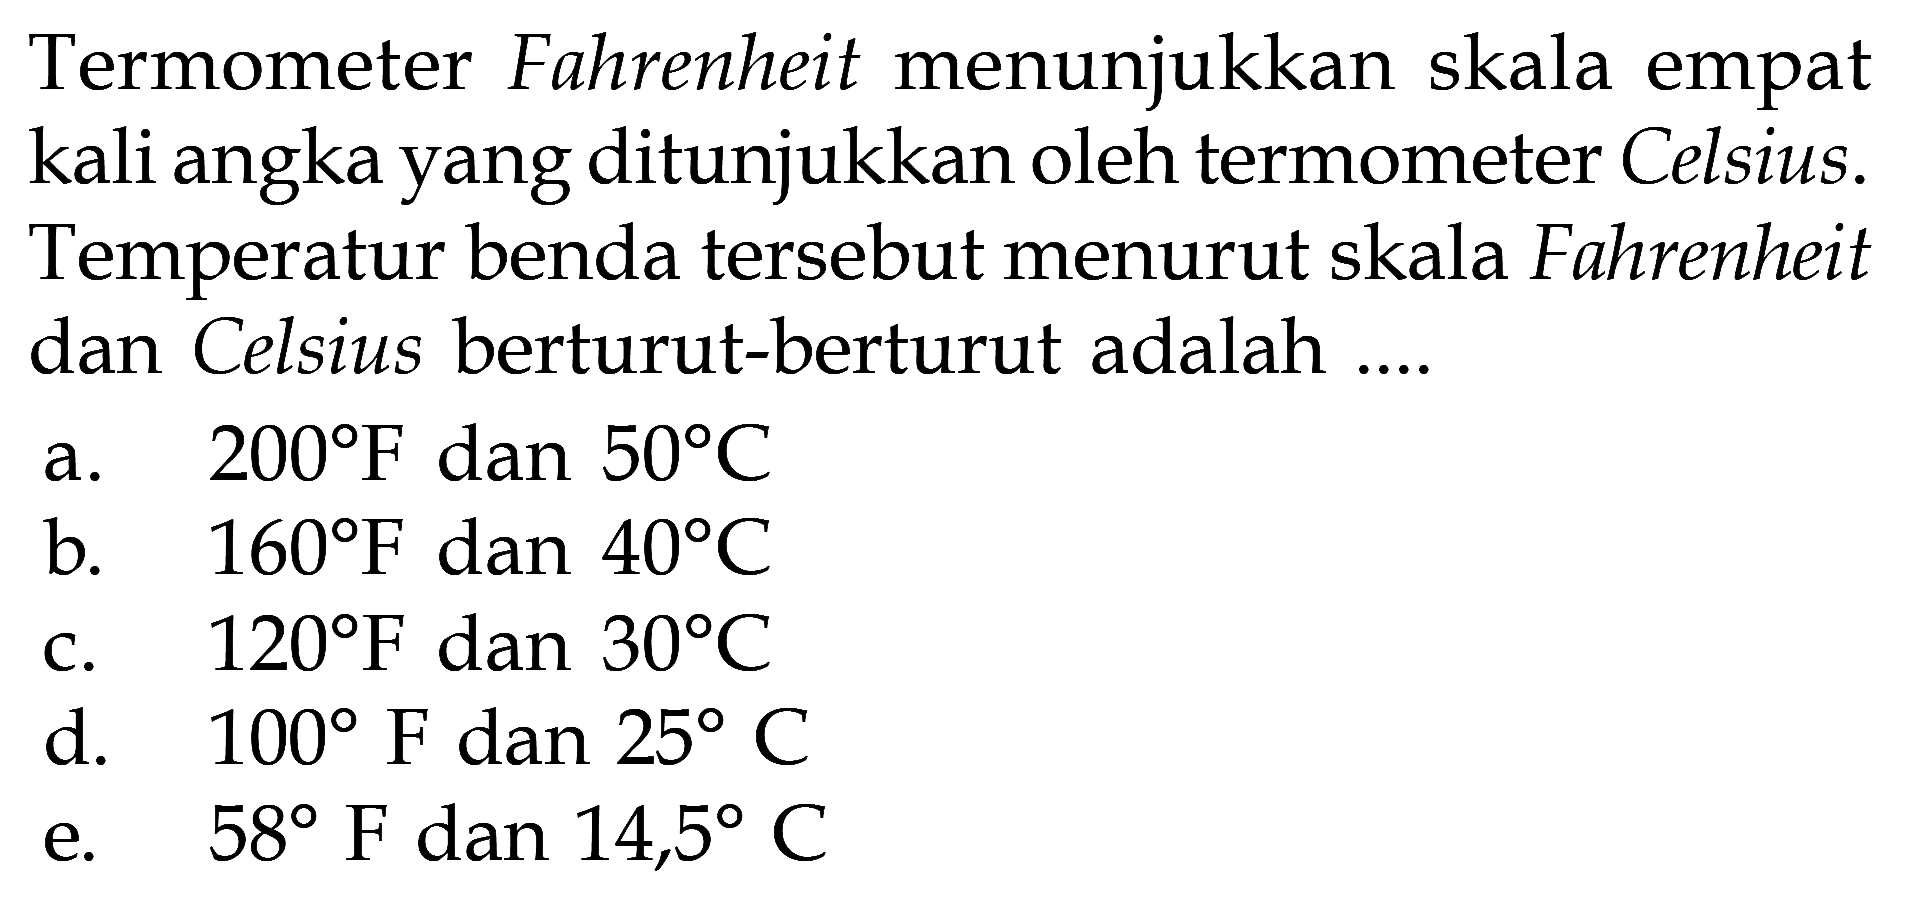 Termometer Fahrenheit menunjukkan skala empat kali angka yang ditunjukkan oleh termometer Celsius. Temperatur benda tersebut menurut skala Fahrenheit dan Celsius berturut-berturut adalah ....